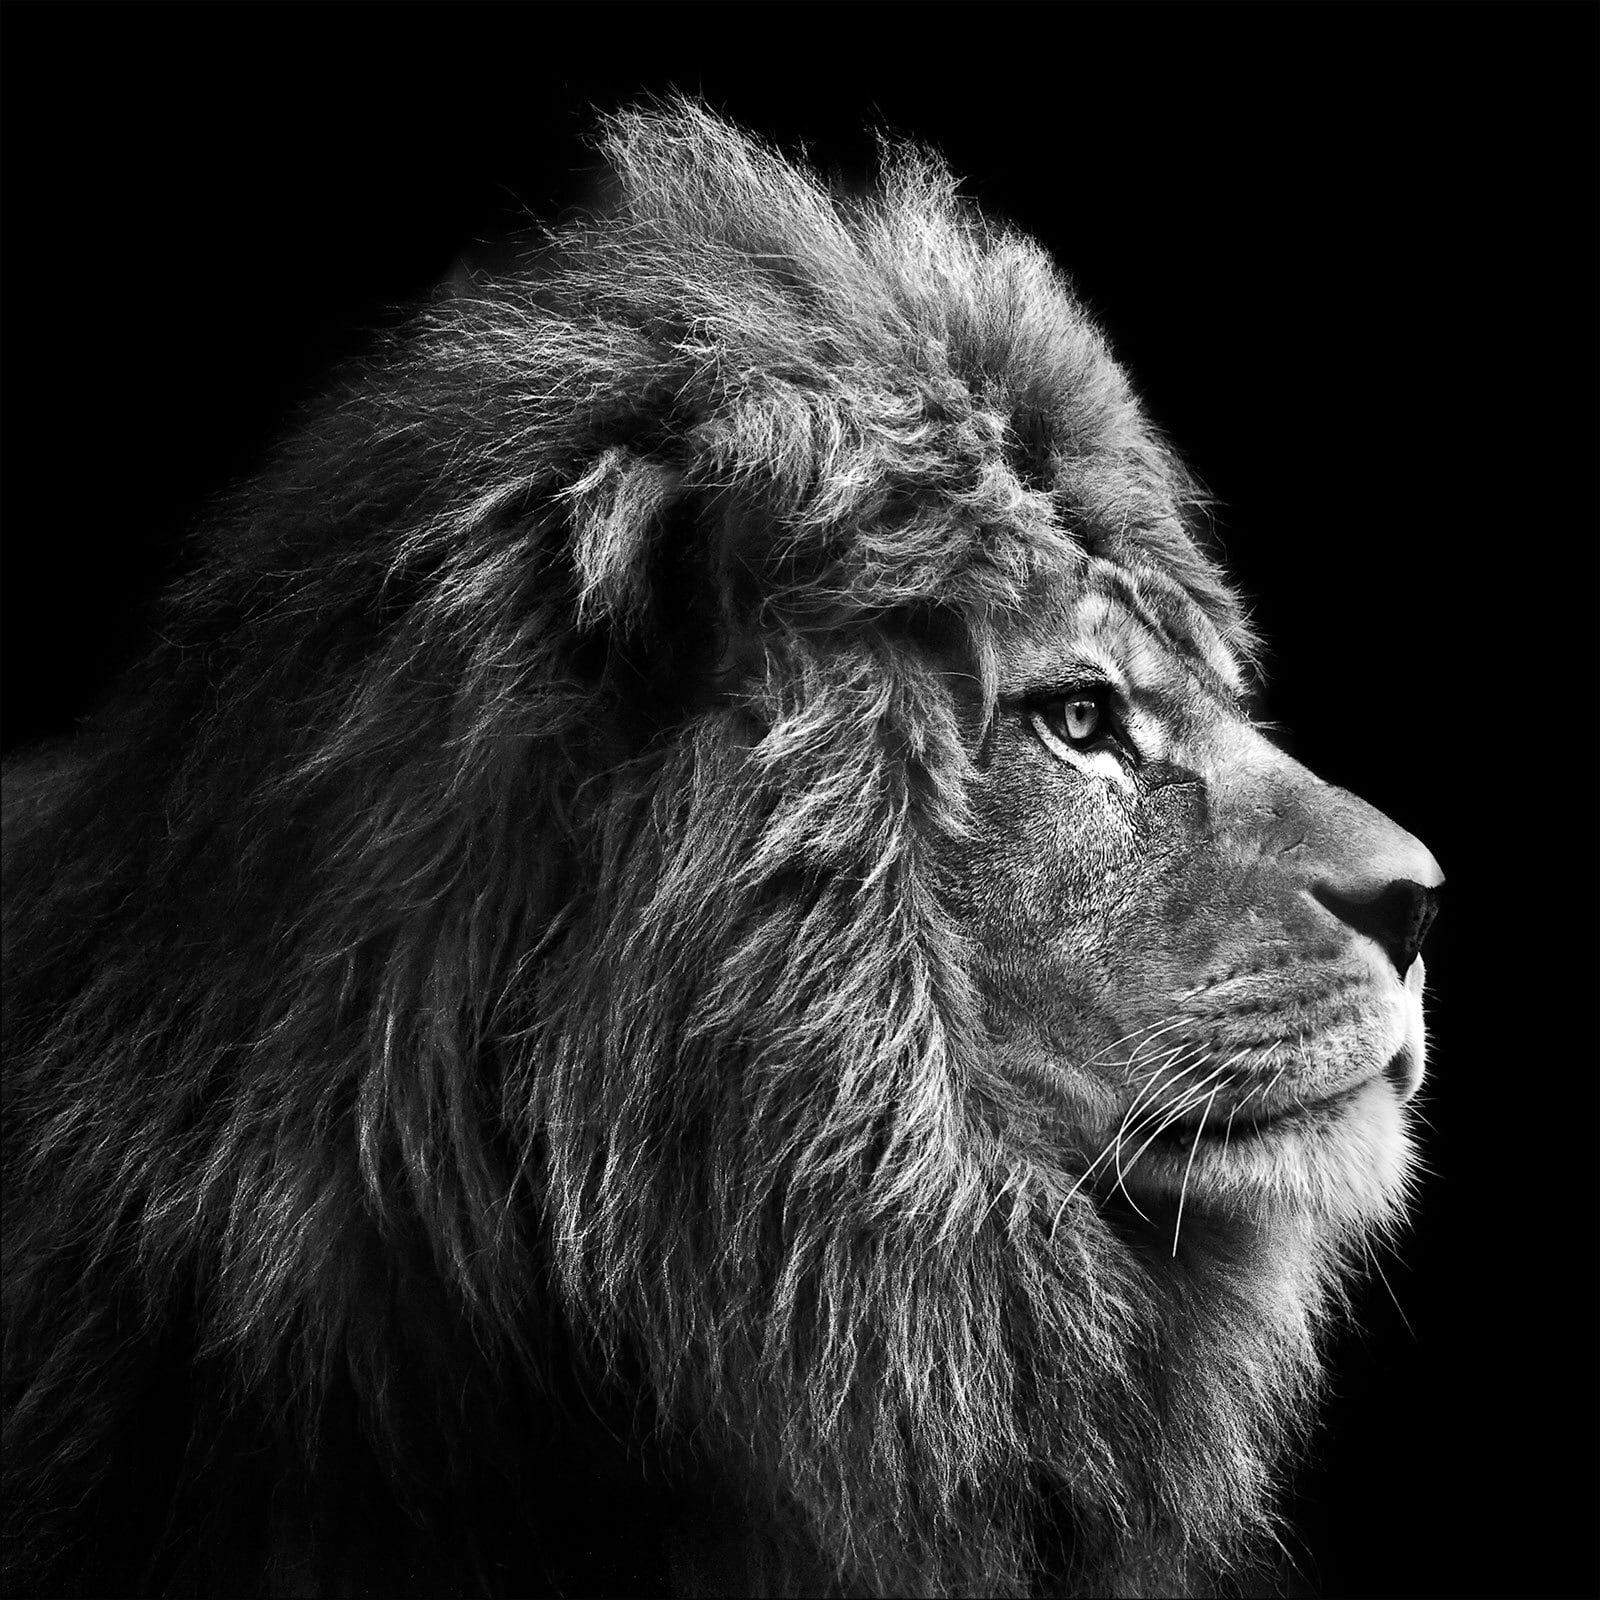 PRO ART Canvas-Art Bild GREY LION HEAD 27 x 27 cm schwarz/ weiß